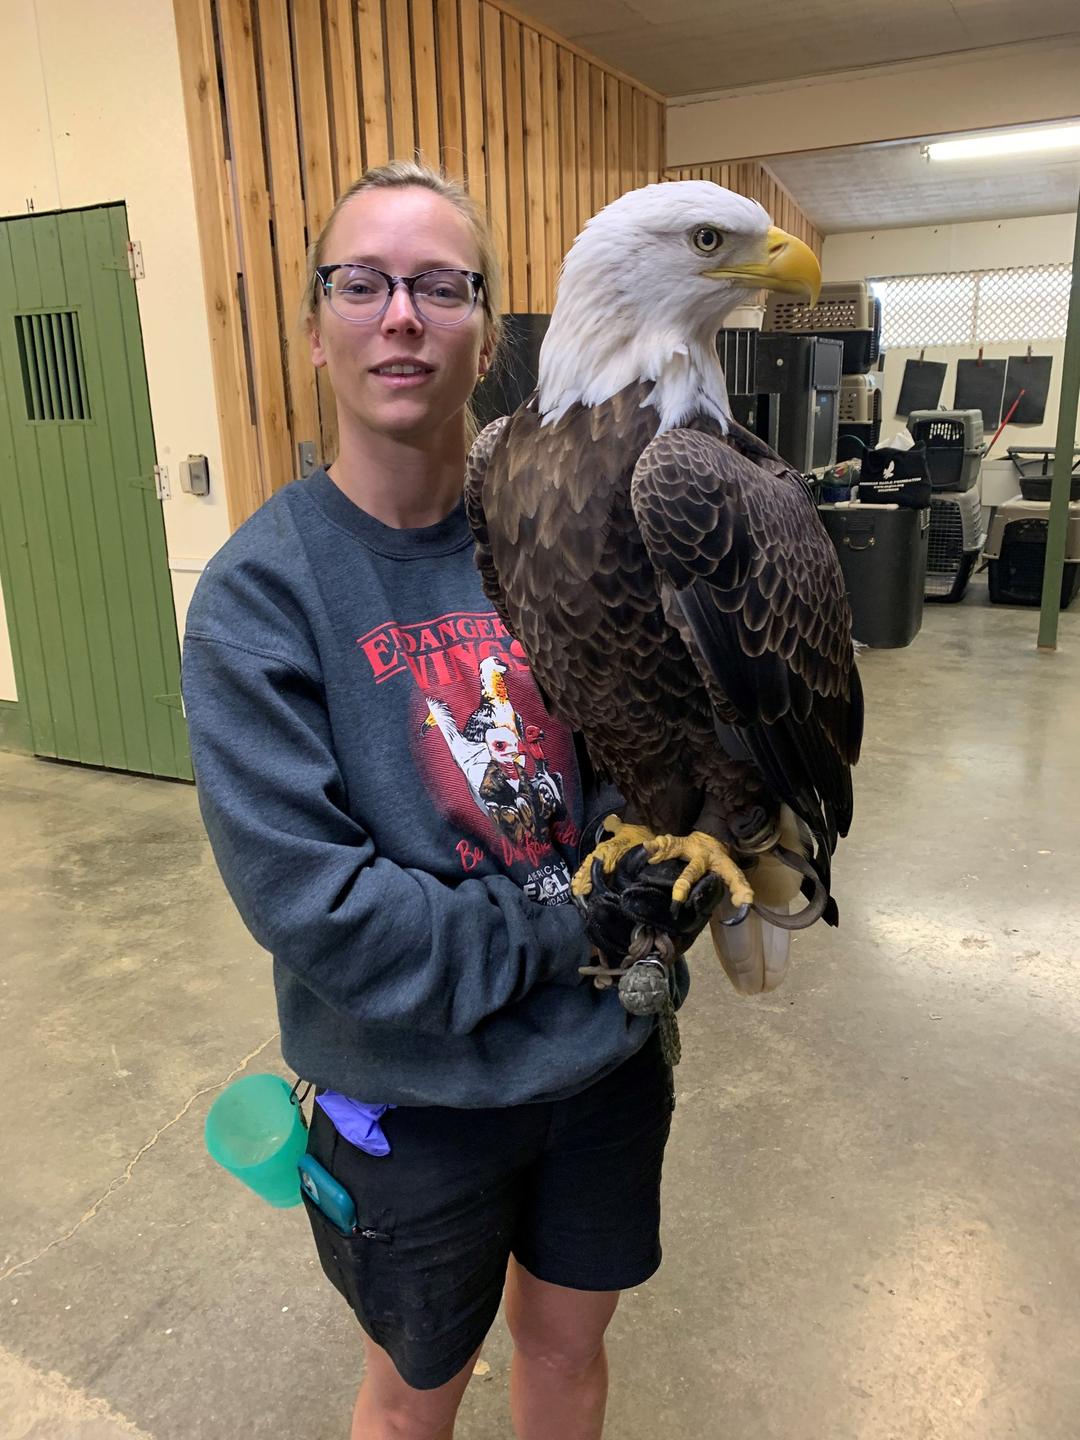 Eine junge blonde Frau in Sweater und kurzer Hose hält auf ihrer behandschuhten Hand den großen Adler.
